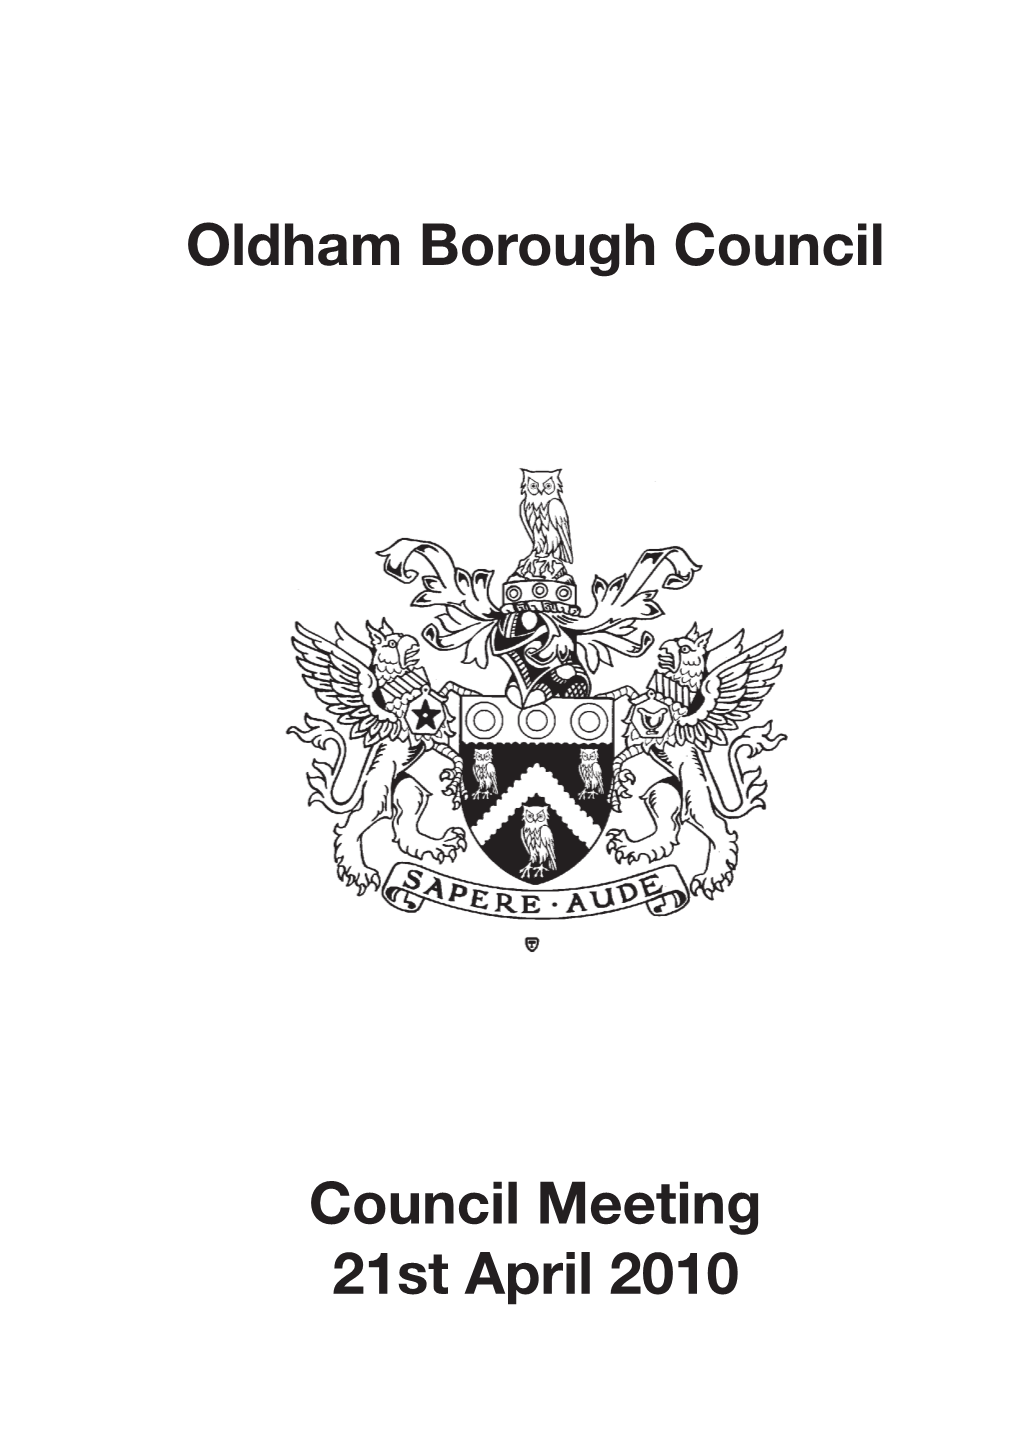 Oldham Borough Council Council Meeting 21St April 2010